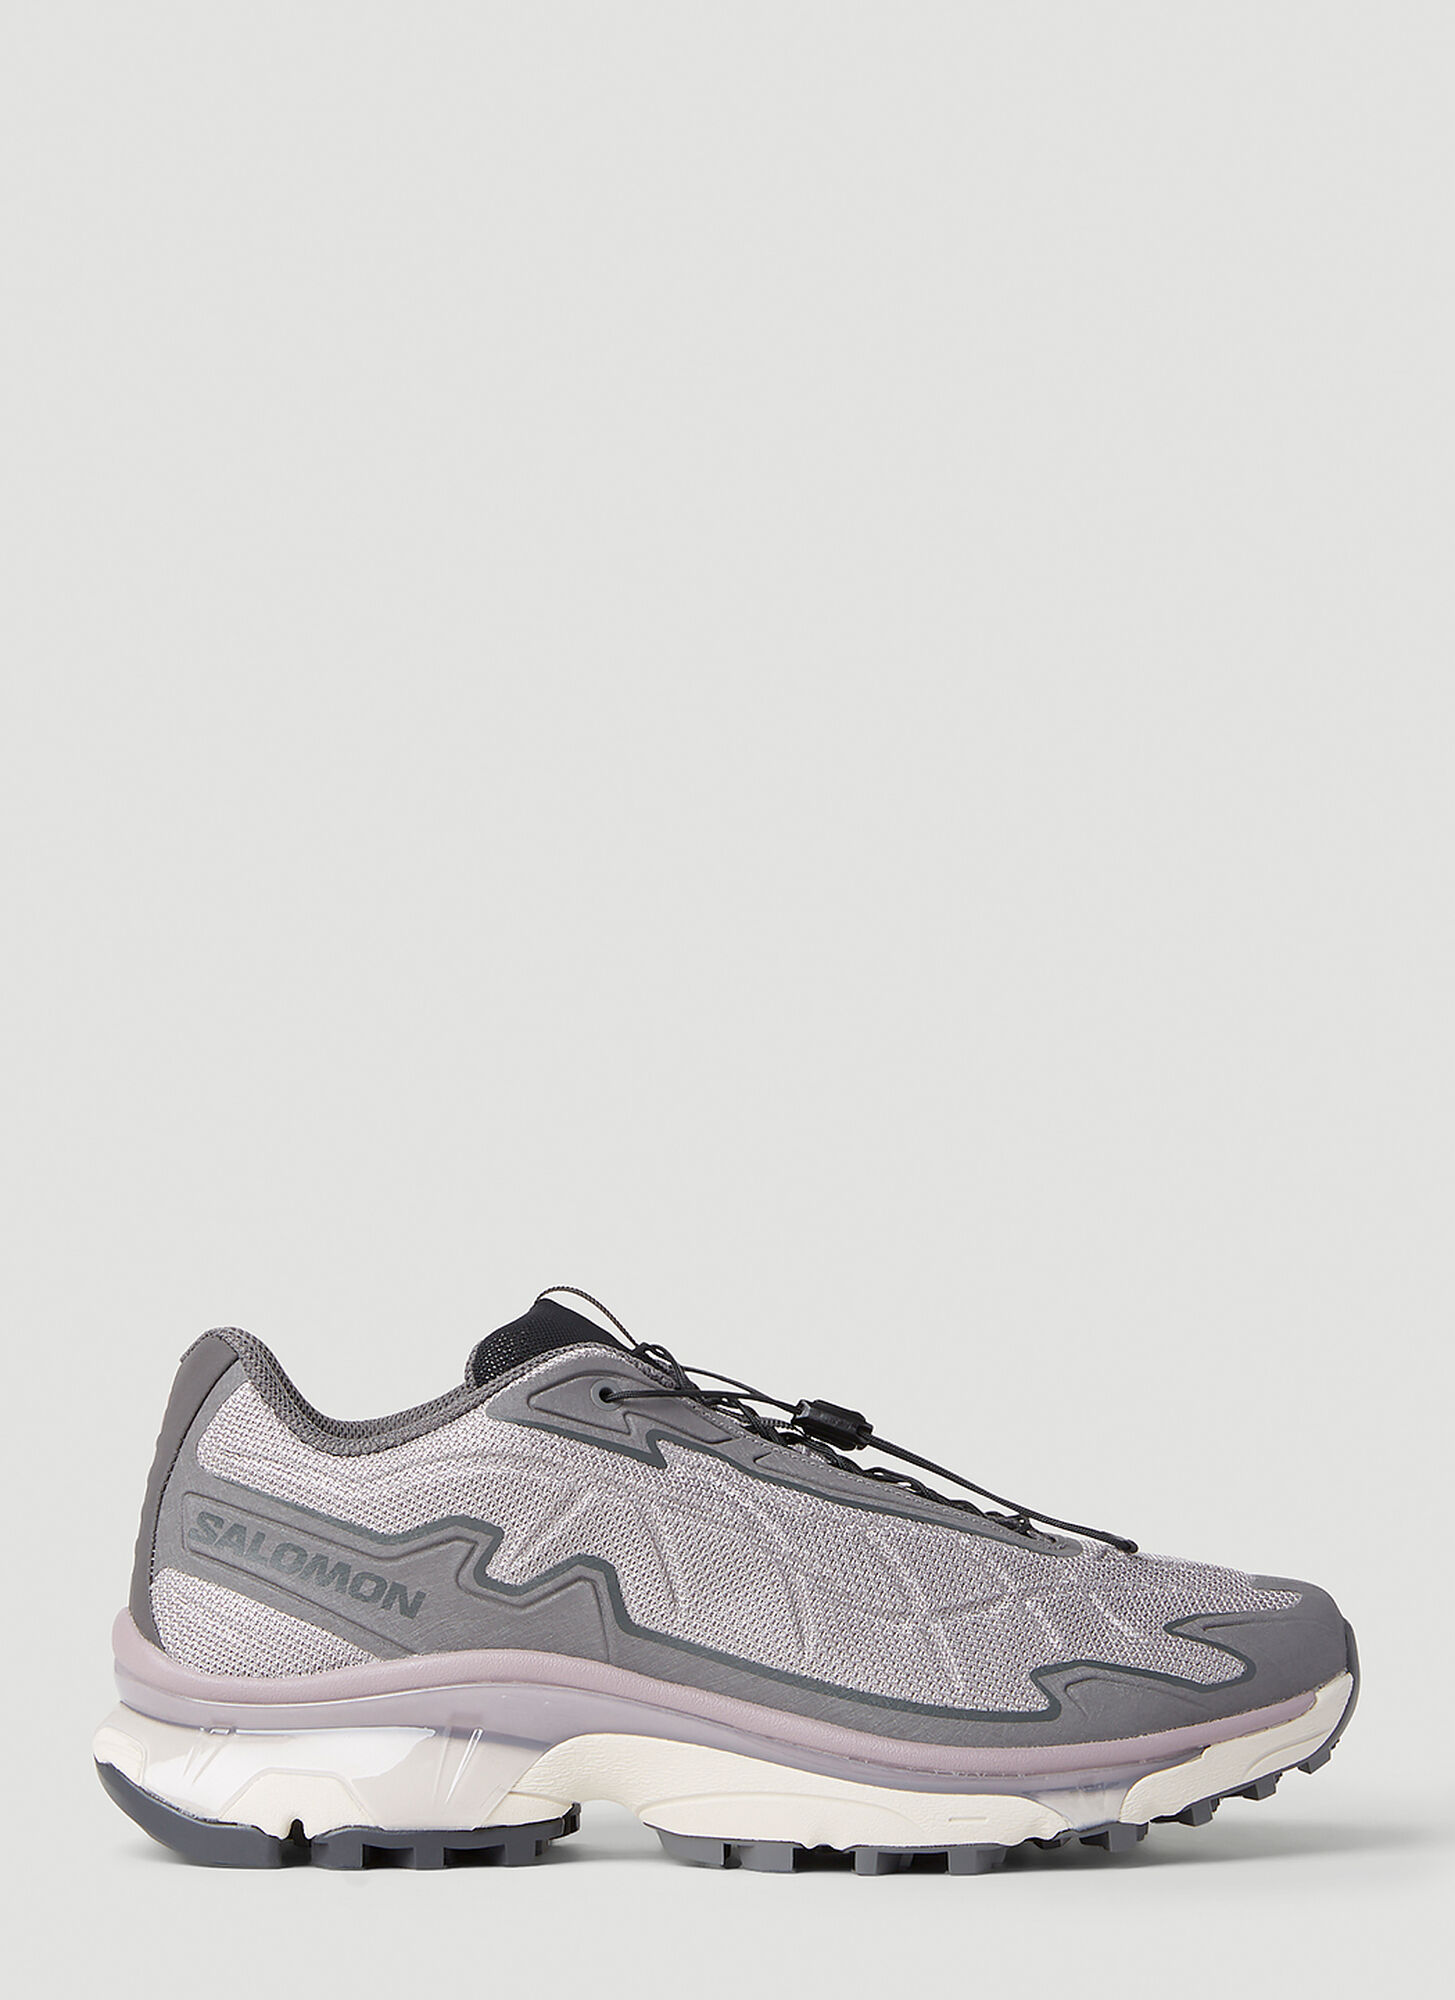 Shop Salomon Xt-slate Advanced Sneakers In Grey